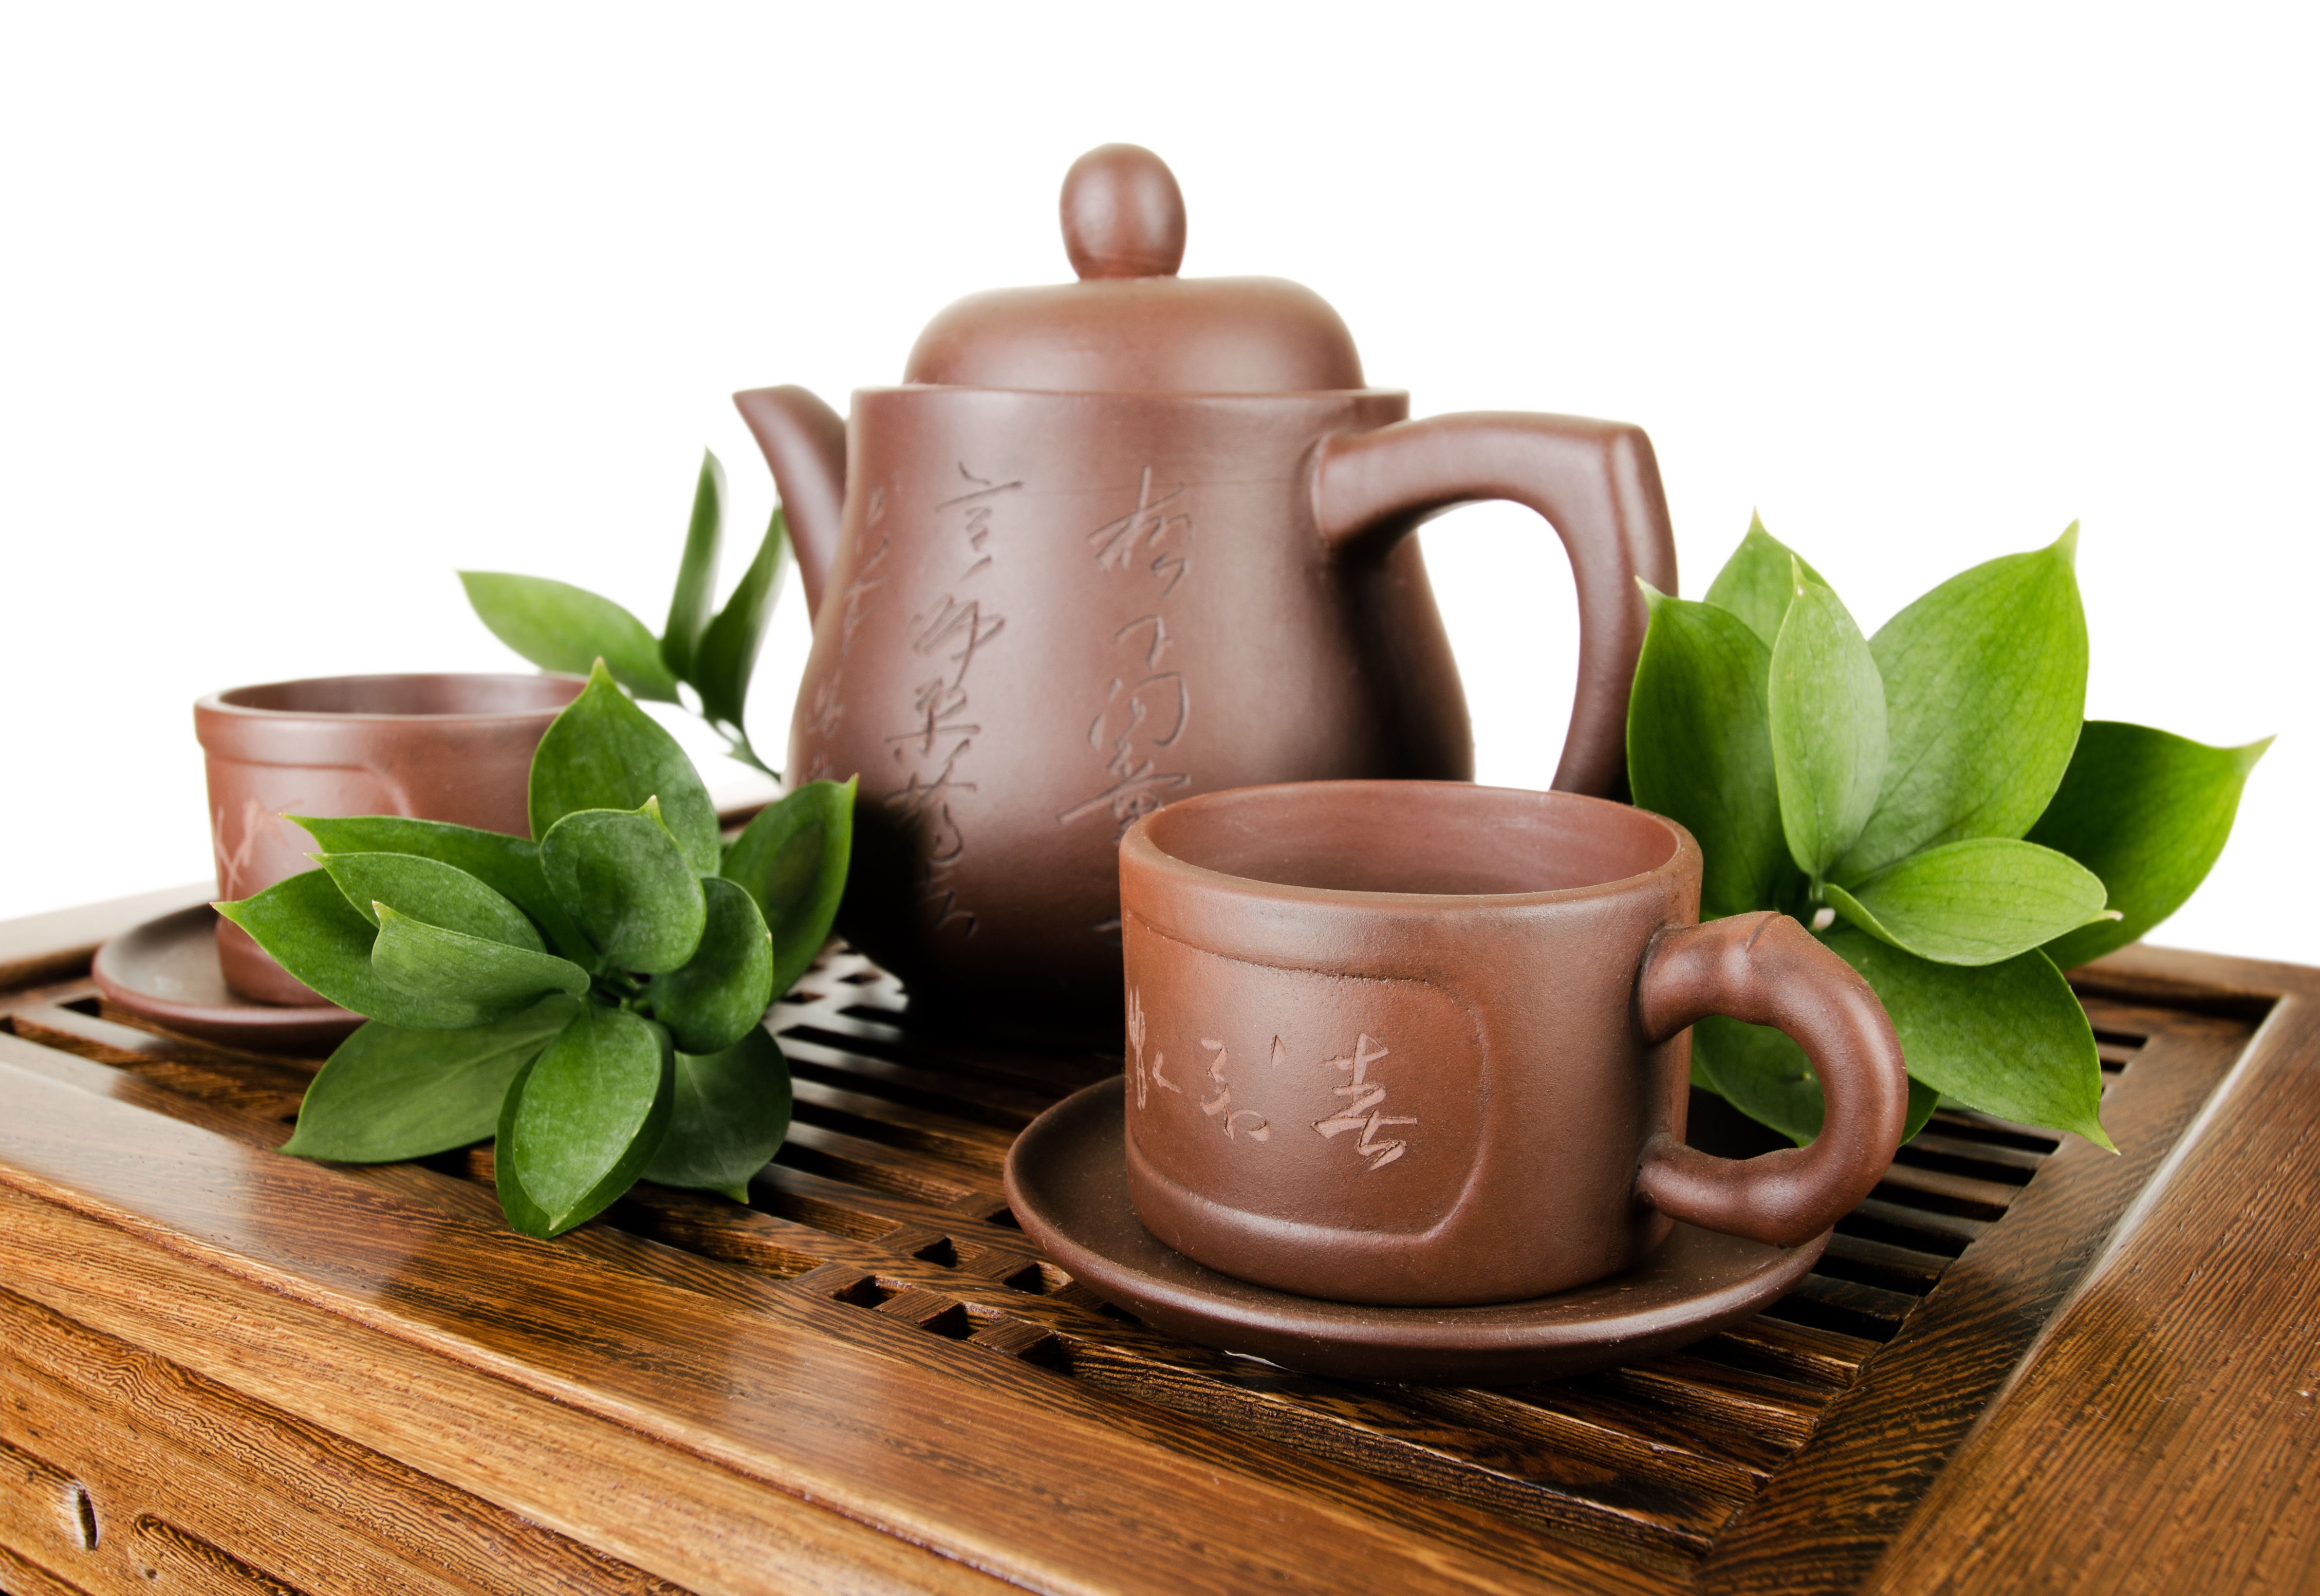 Картинка по теме: В каком чайнике будет самый вкусный чай?